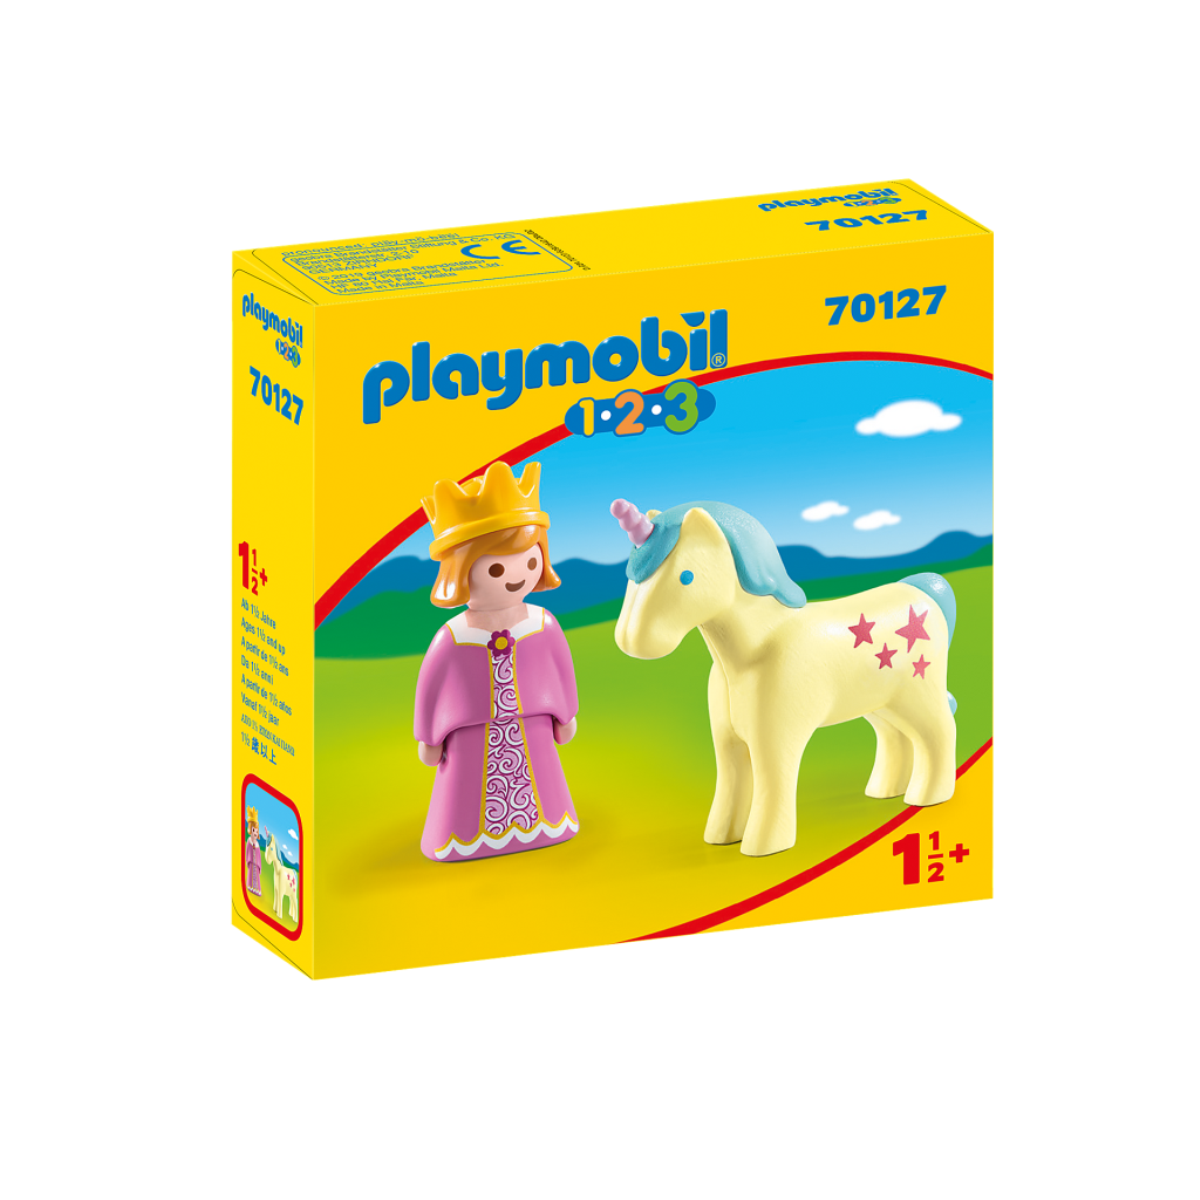 PLAYMOBIL Prinzessin mit Spielzeug Einhorn